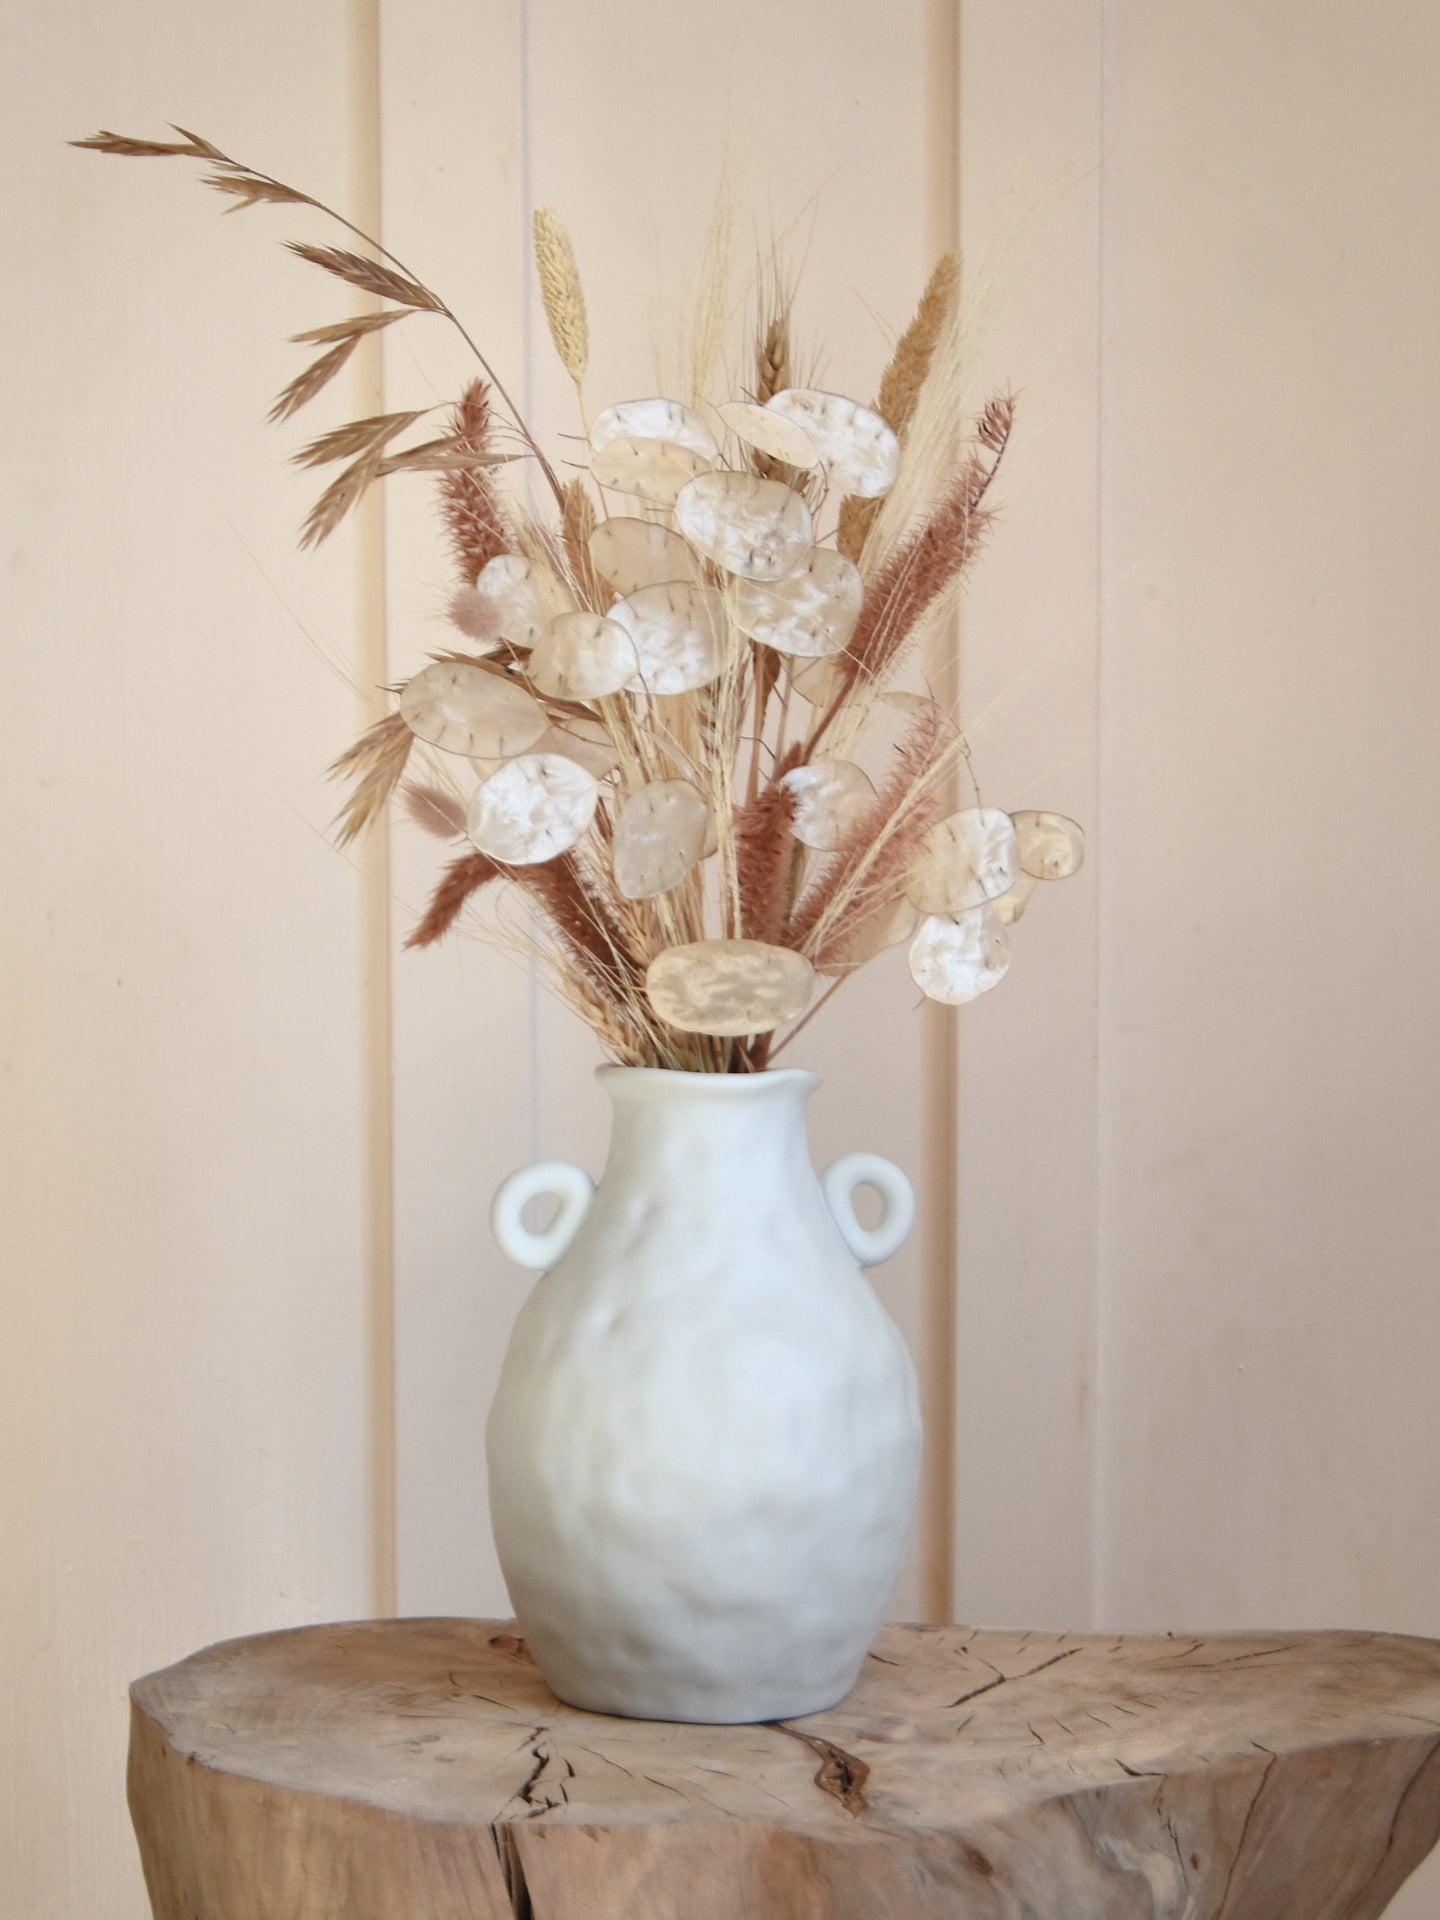 Everlasting Bridal Bouquet in rustic ceramic vase